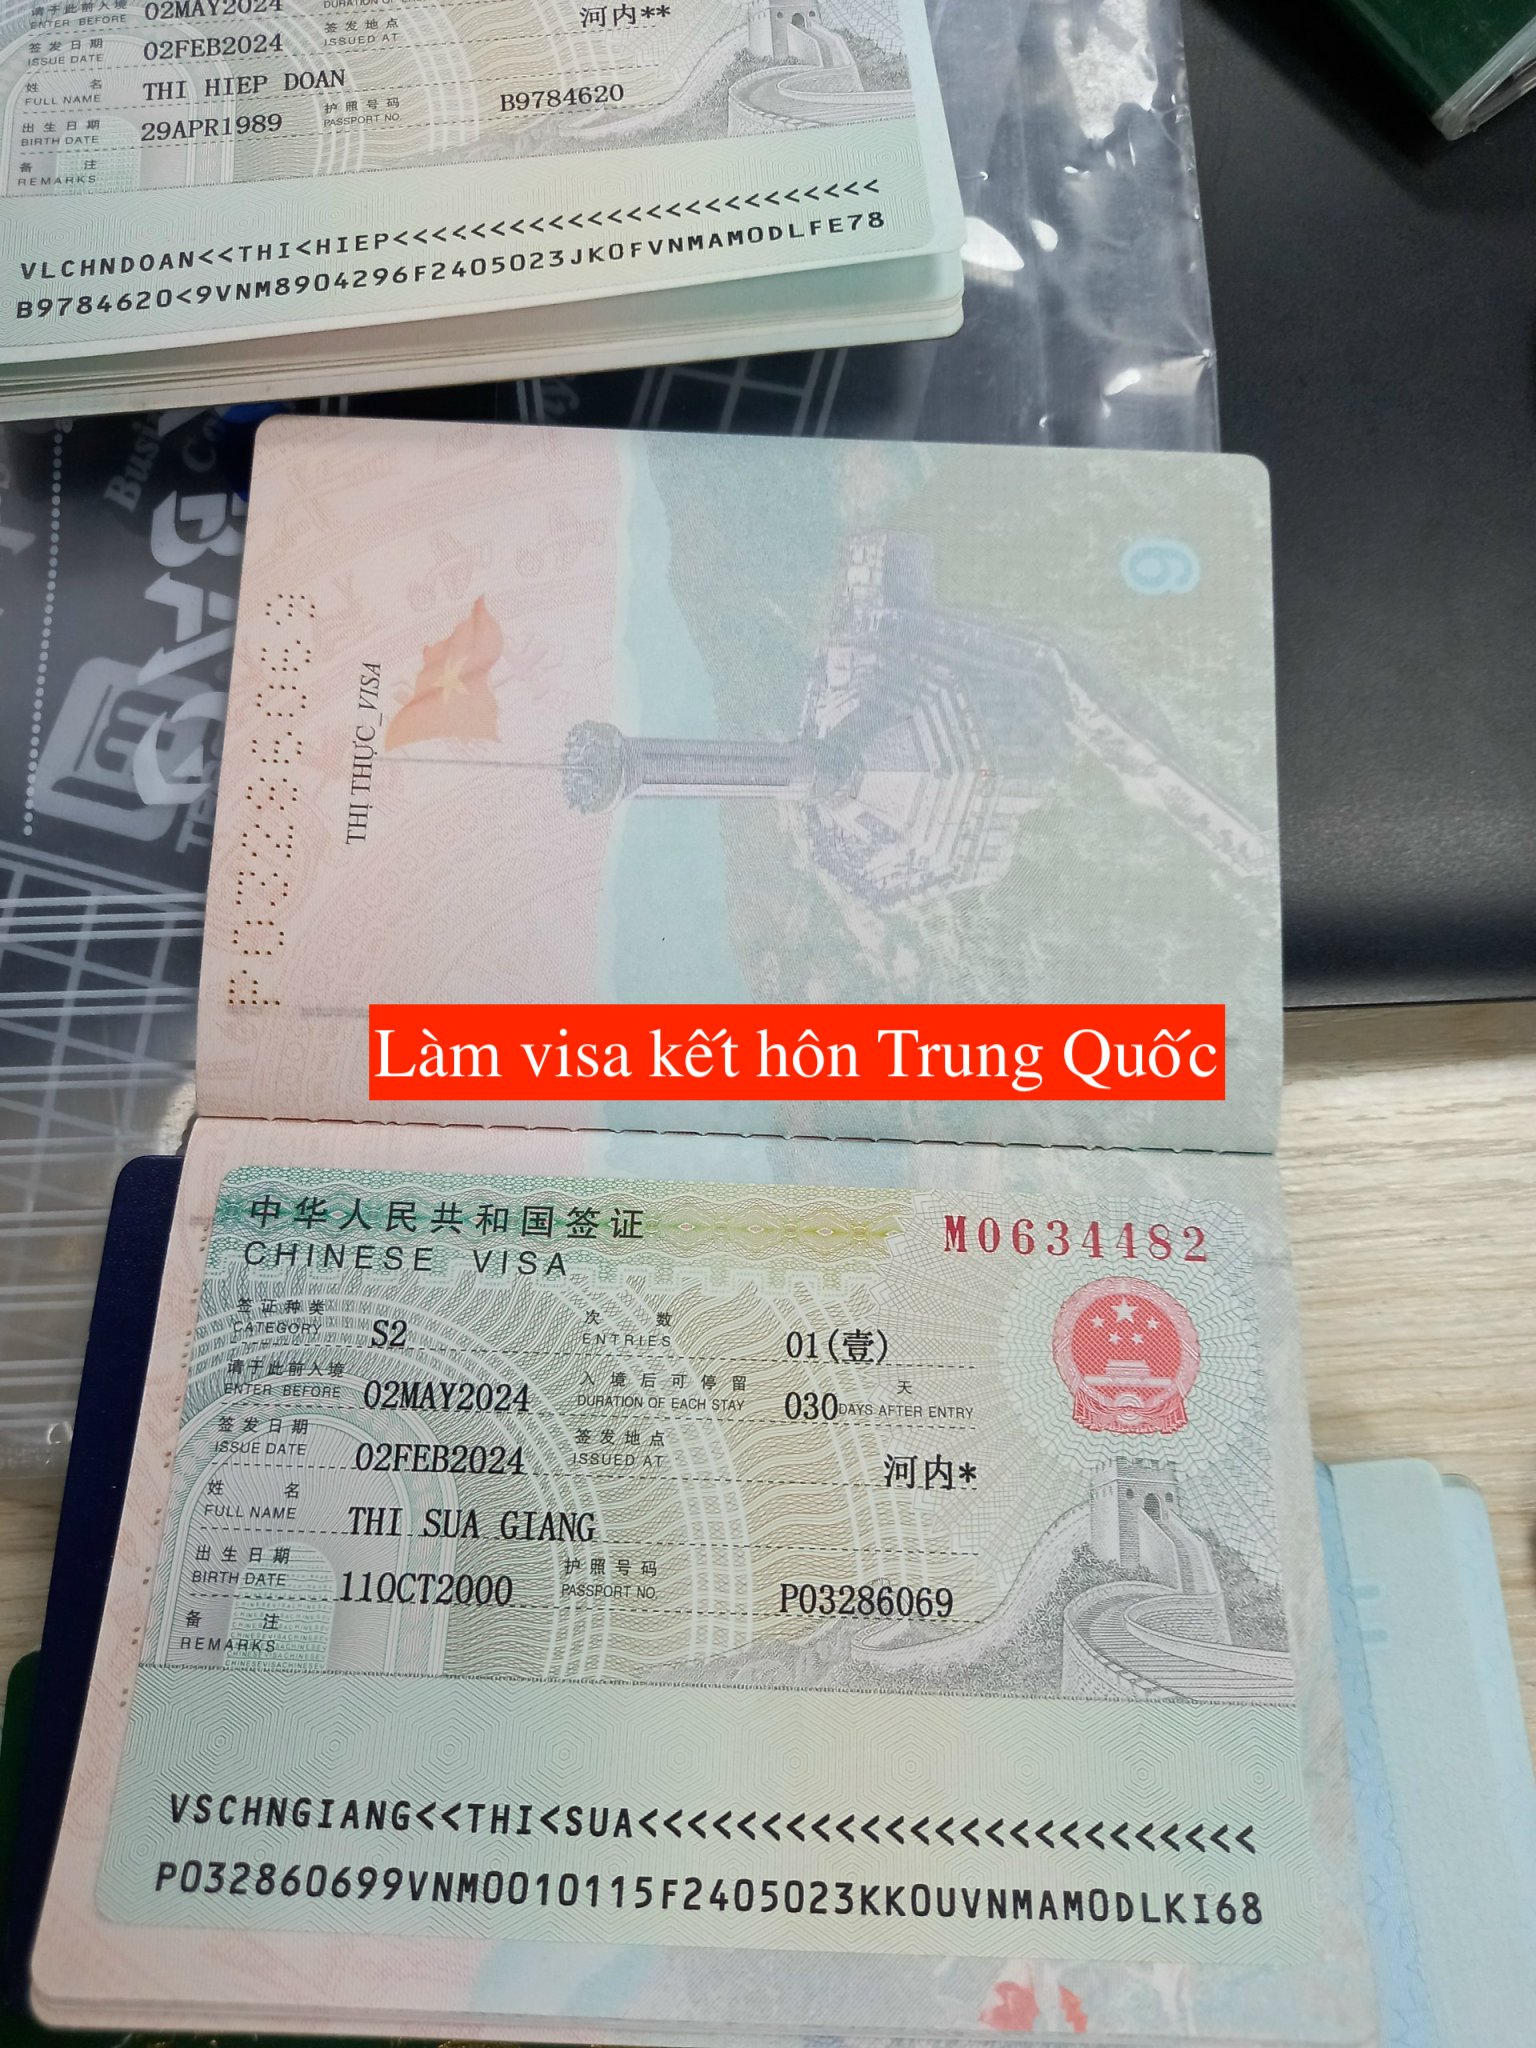 Visa kết hôn Trung Quốc | Làm visa kết hôn Trung Quốc